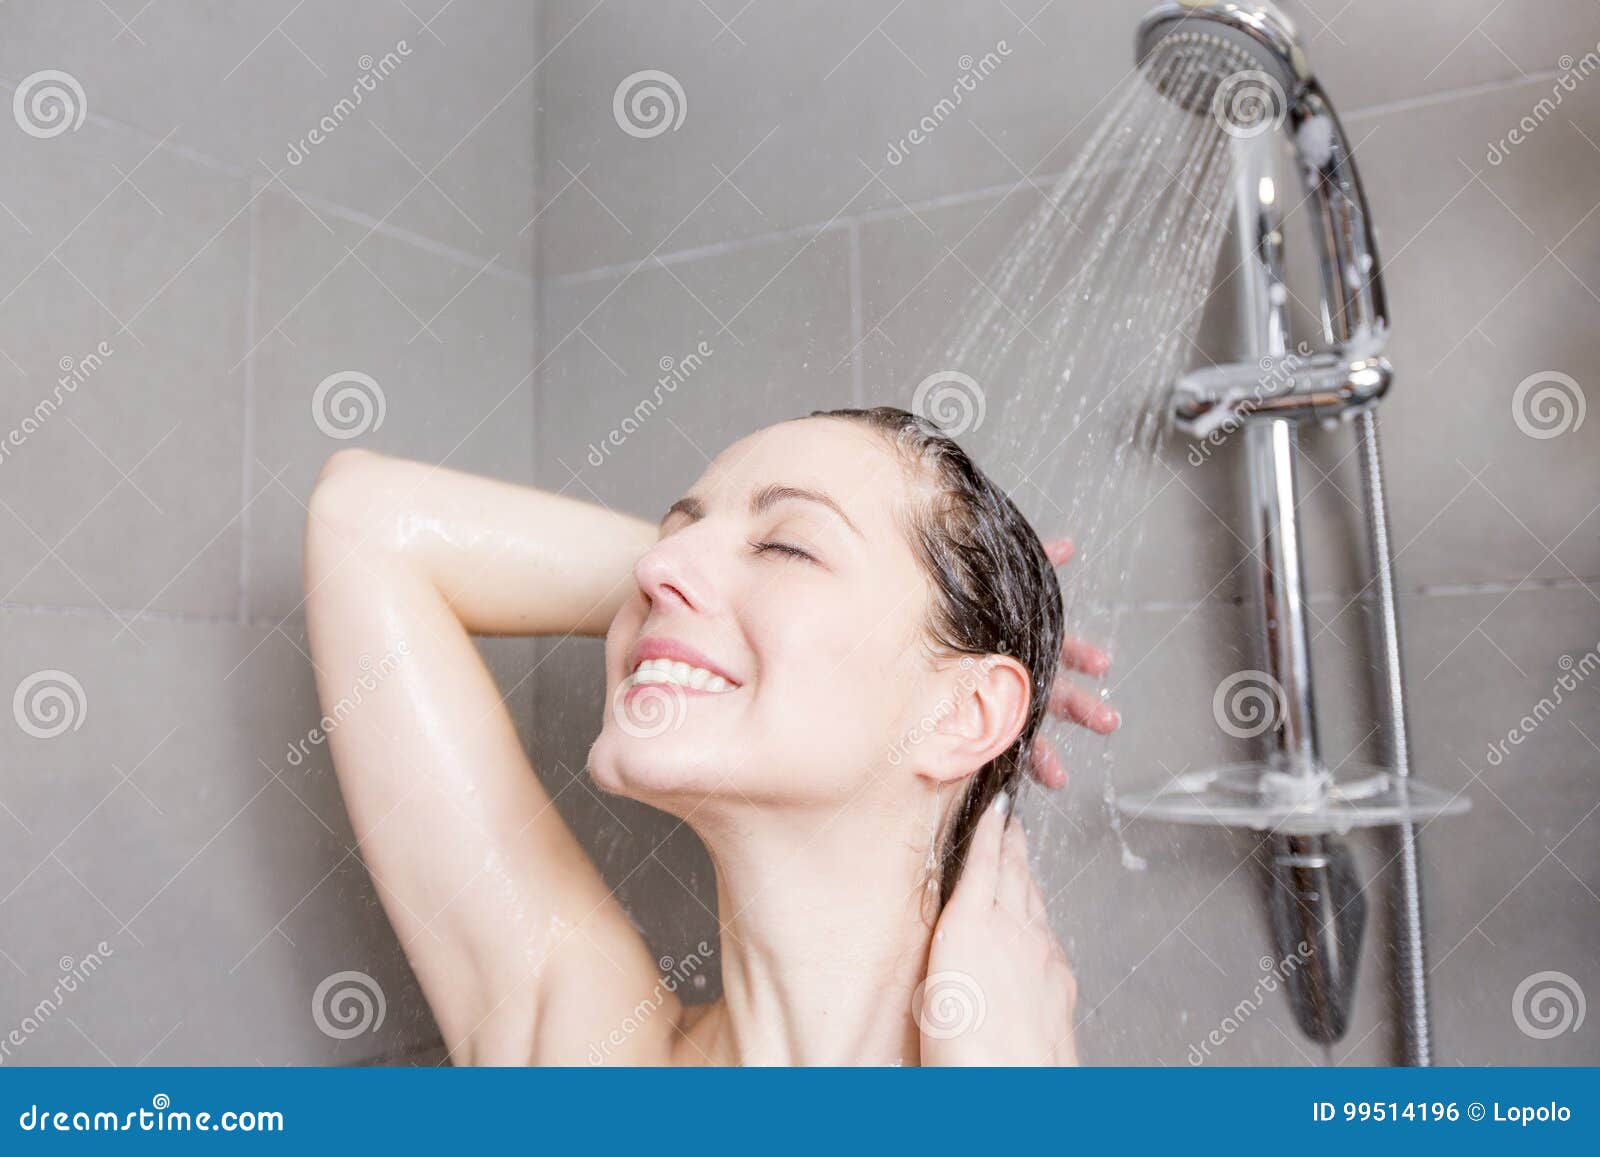 оргазм душем струей воды фото 51